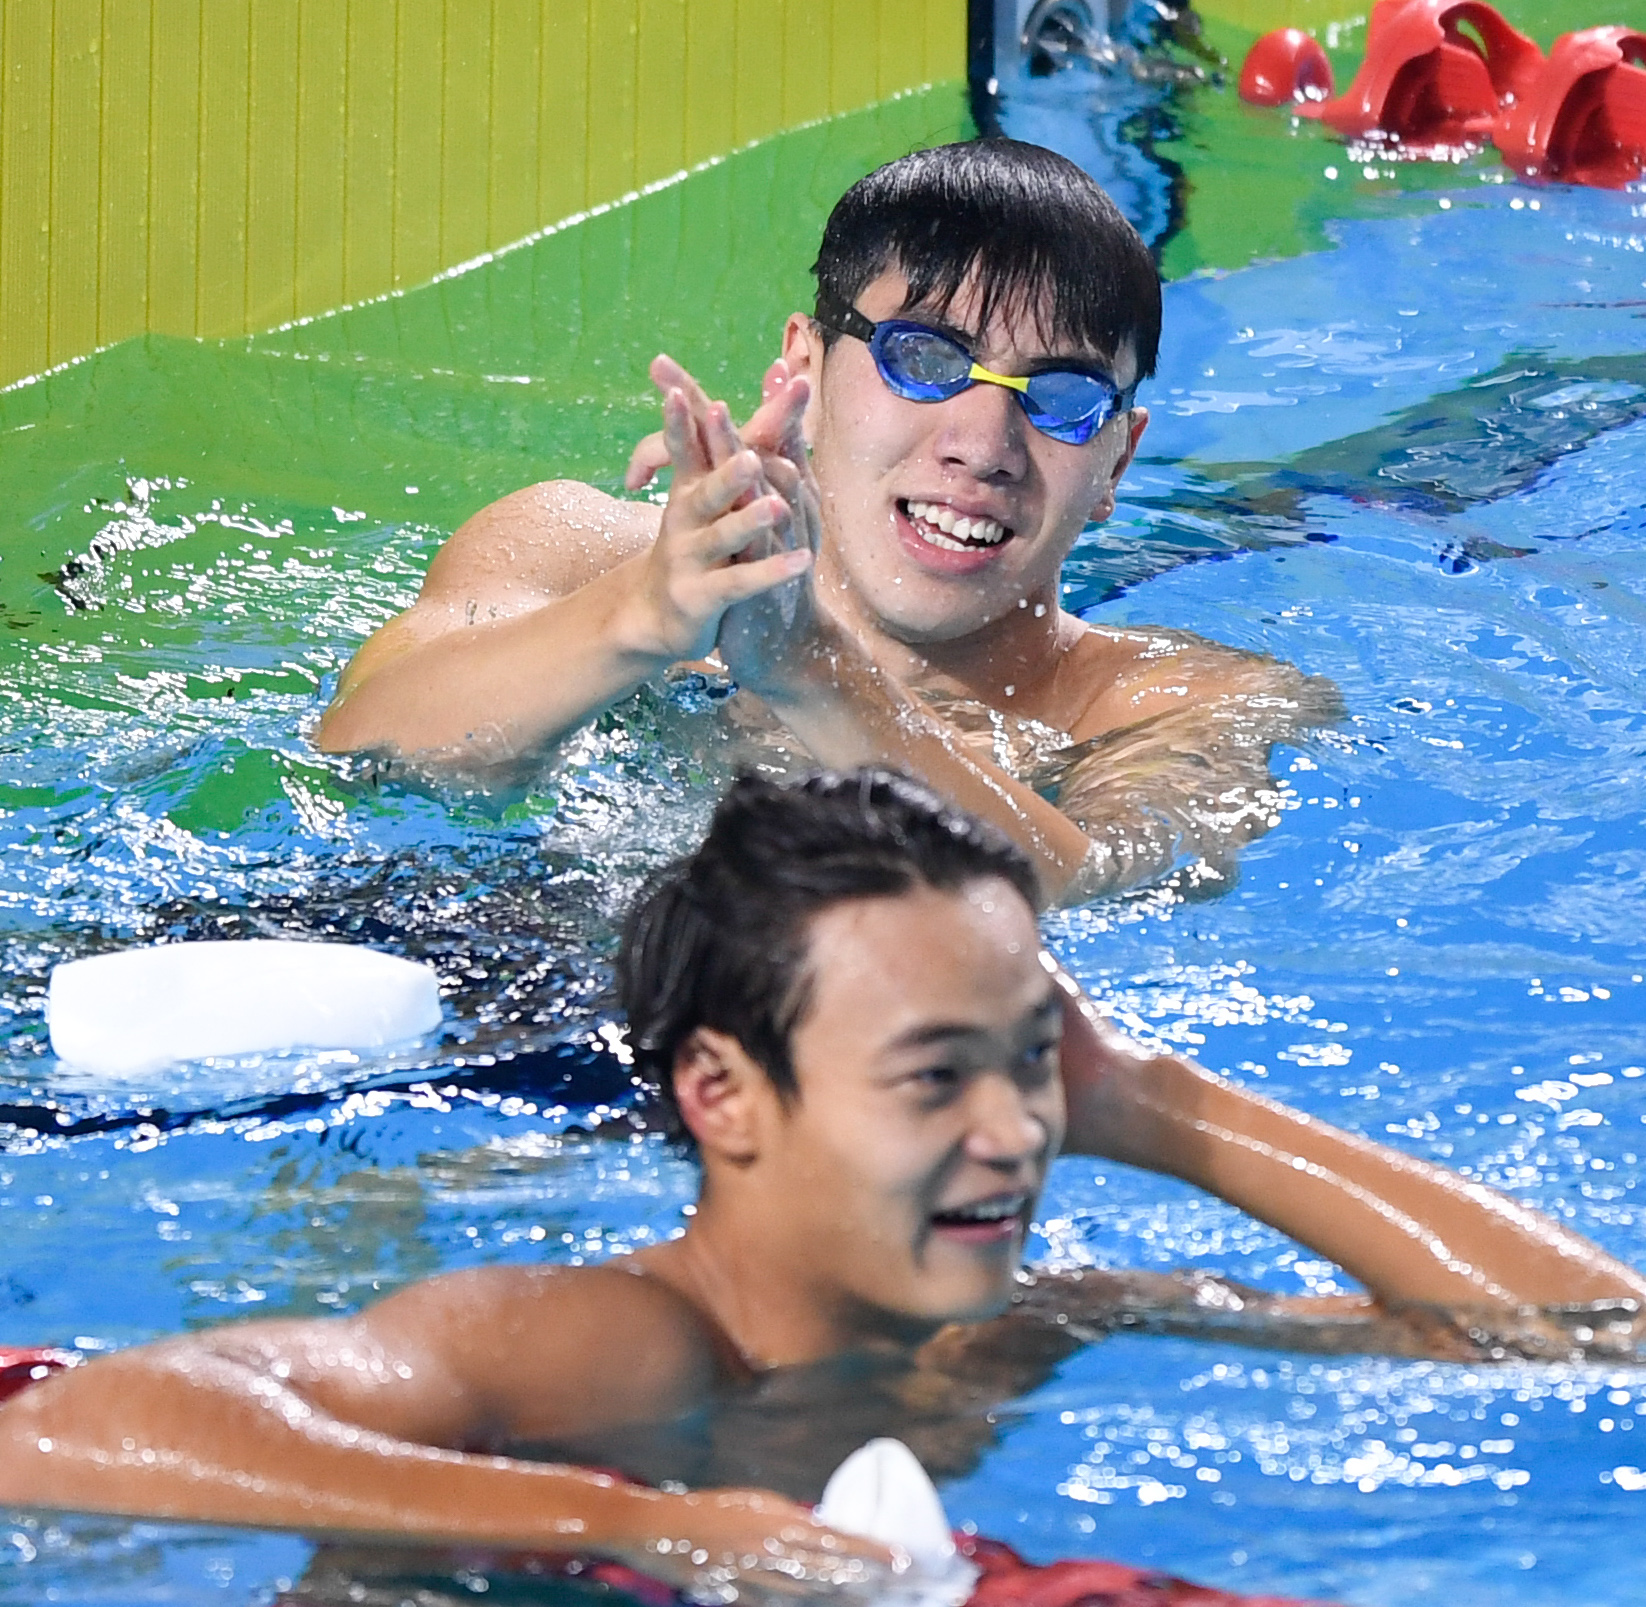 中国游泳队帅哥师弟图片